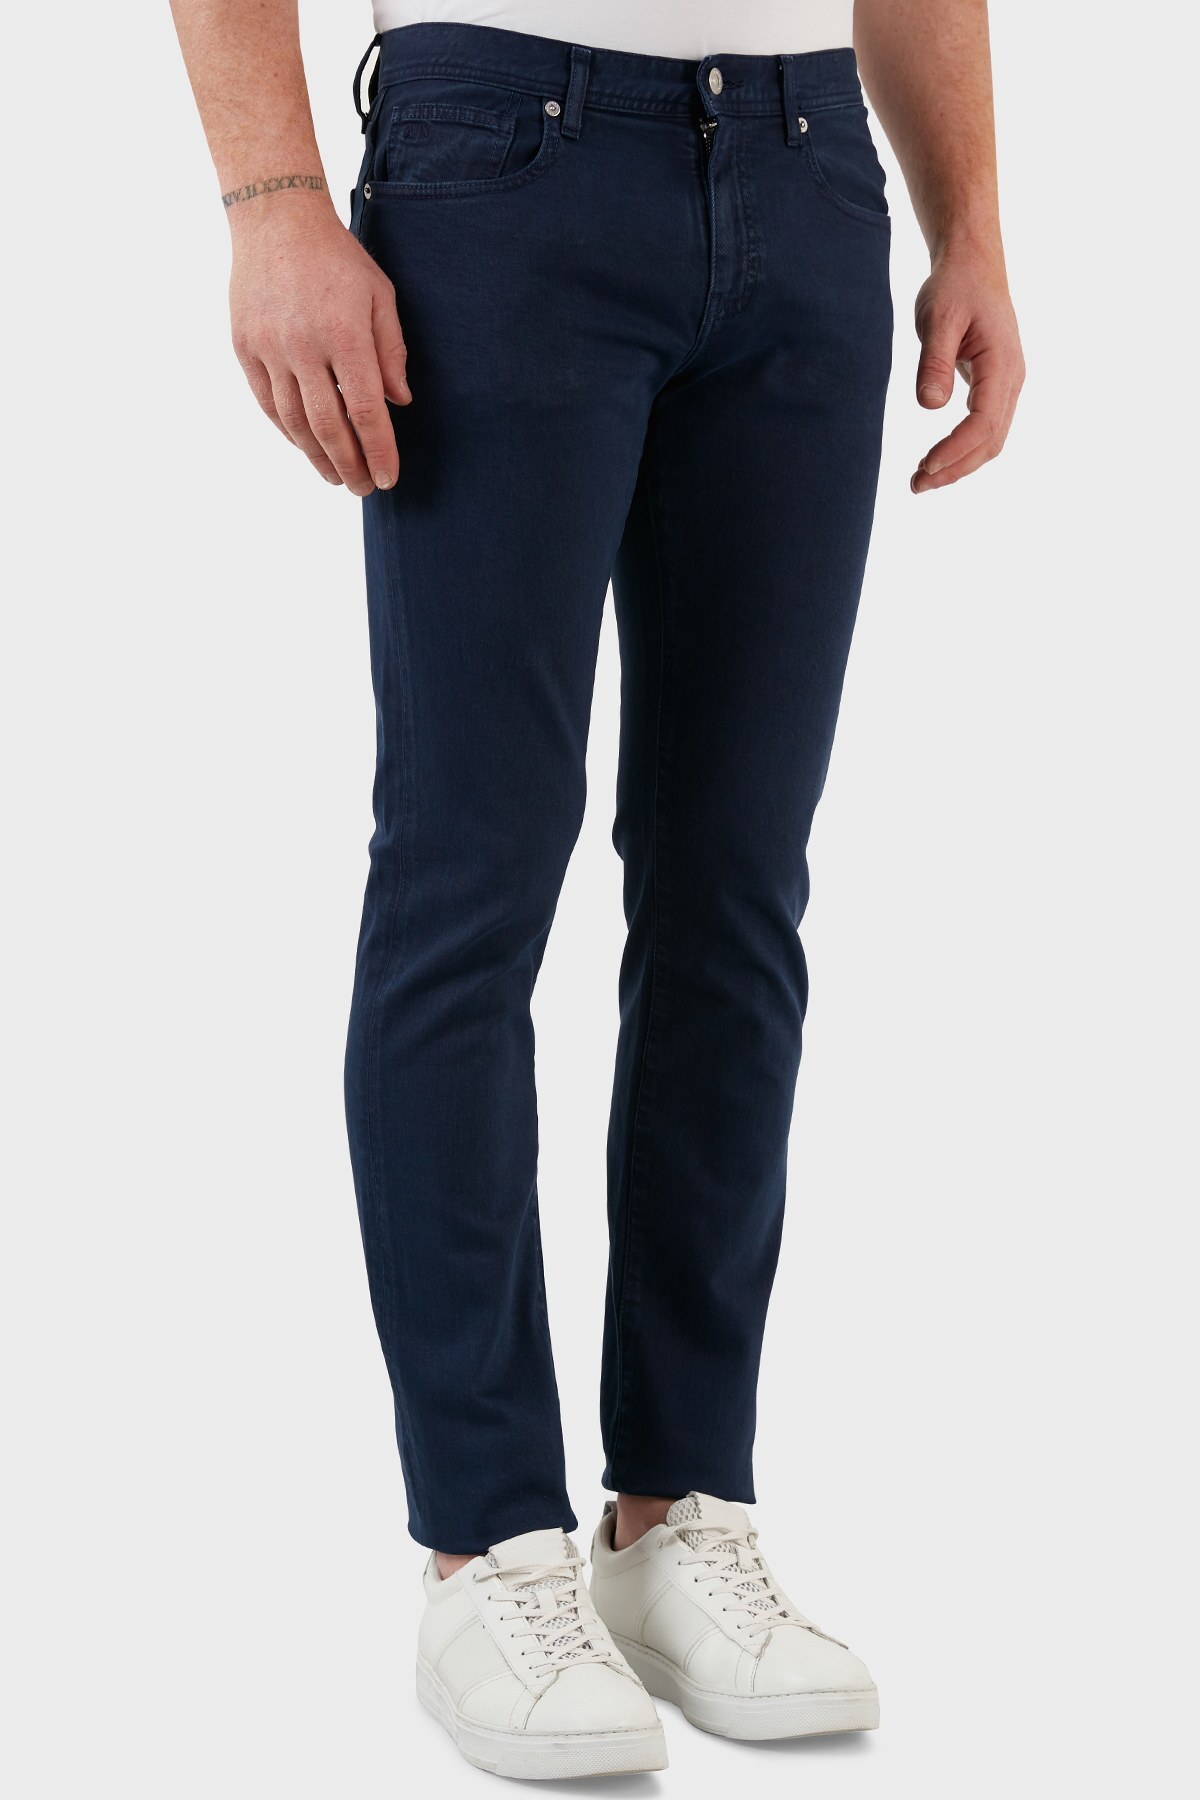 Armani Exchange Pamuklu Normal Bel Slim Fit Dar Paça Jeans Erkek Kot Pantolon 3LZJ13 Z1D7Z 1510 LACİVERT